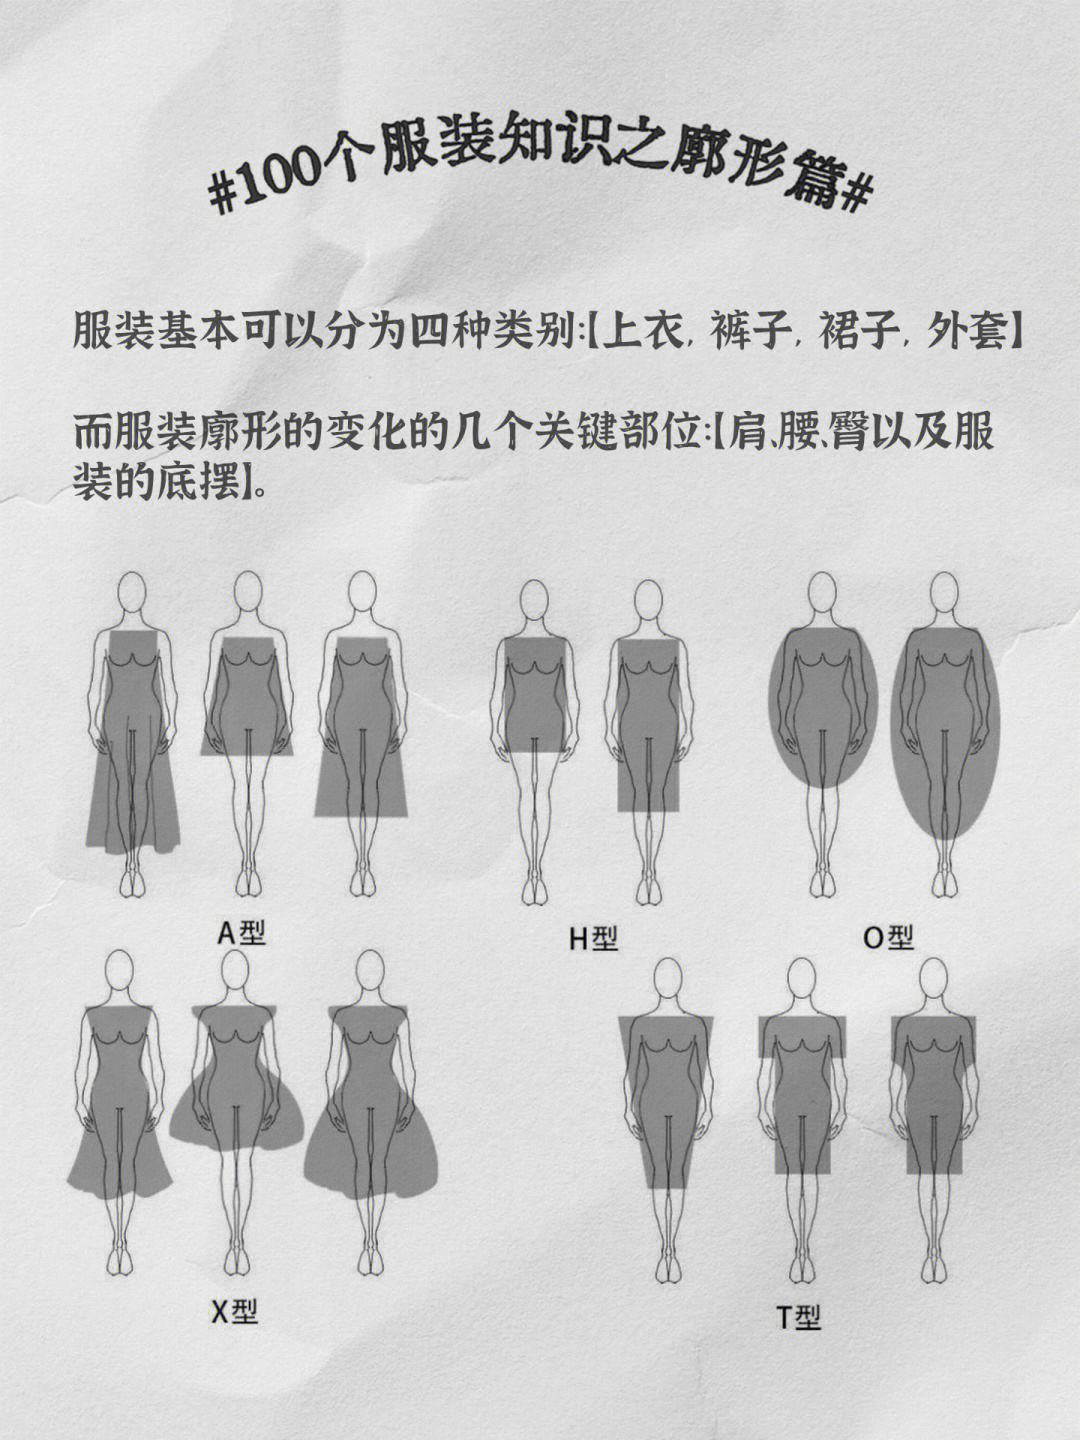 服装廓形八种款式图图片